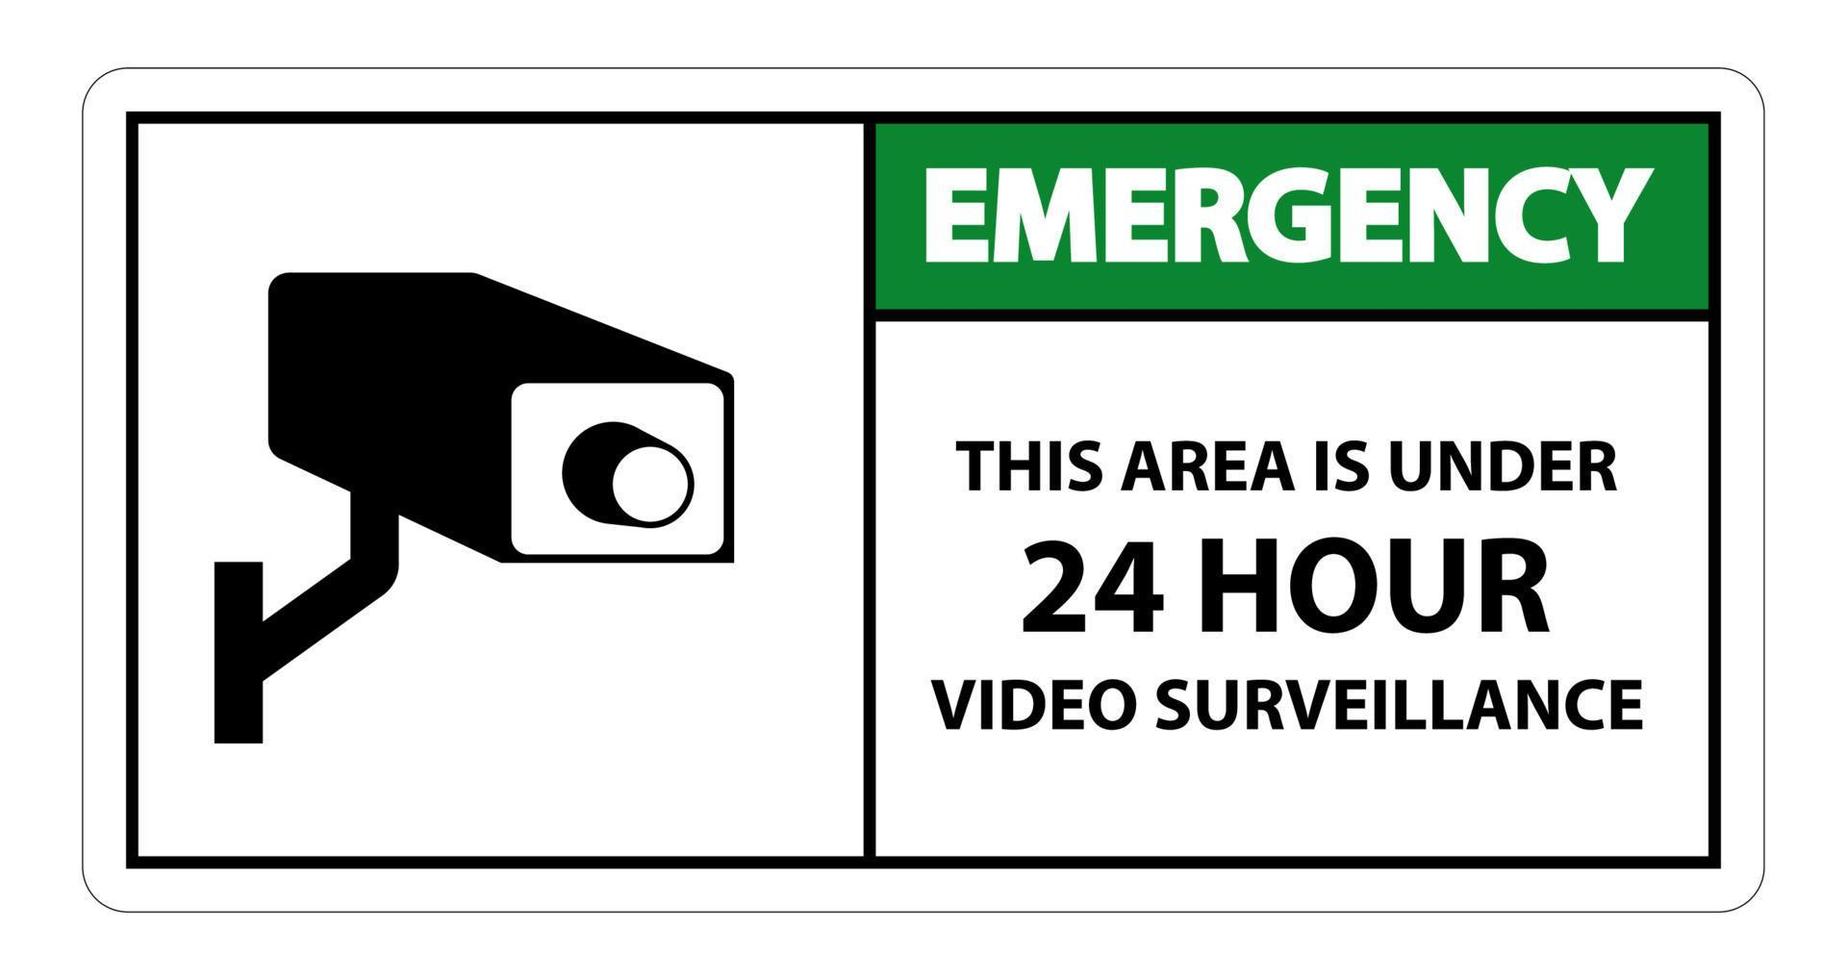 Biểu tượng khẩn cấp giám sát video 24 giờ sẽ giúp bạn liên hệ nhanh chóng với cảnh sát trong trường hợp xấu. Chỉ cần một cú nhấn nút, bạn có thể báo ngay cho đội ngũ cứu hộ khi cần thiết.